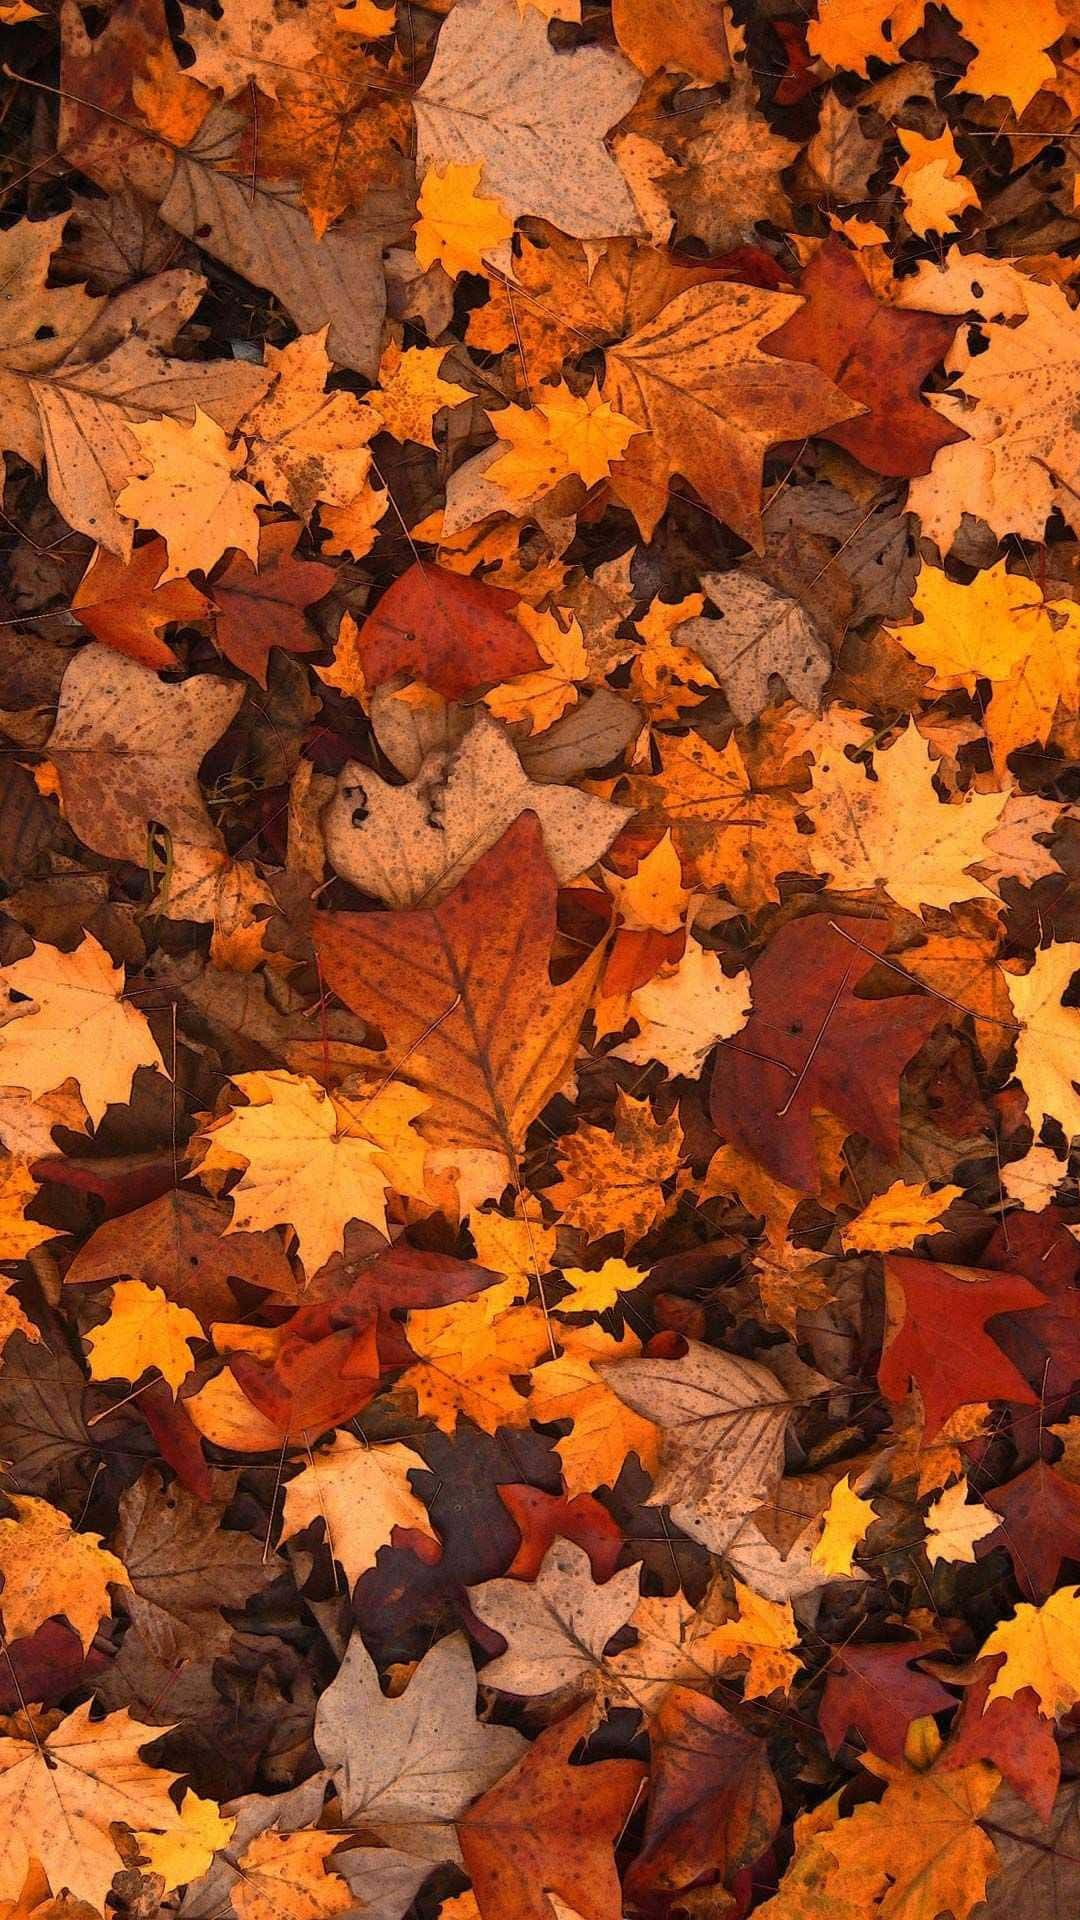 Hübscherhaufen Getrockneter Blätter Als Niedliches Herbstmotiv Für Das Iphone. Wallpaper